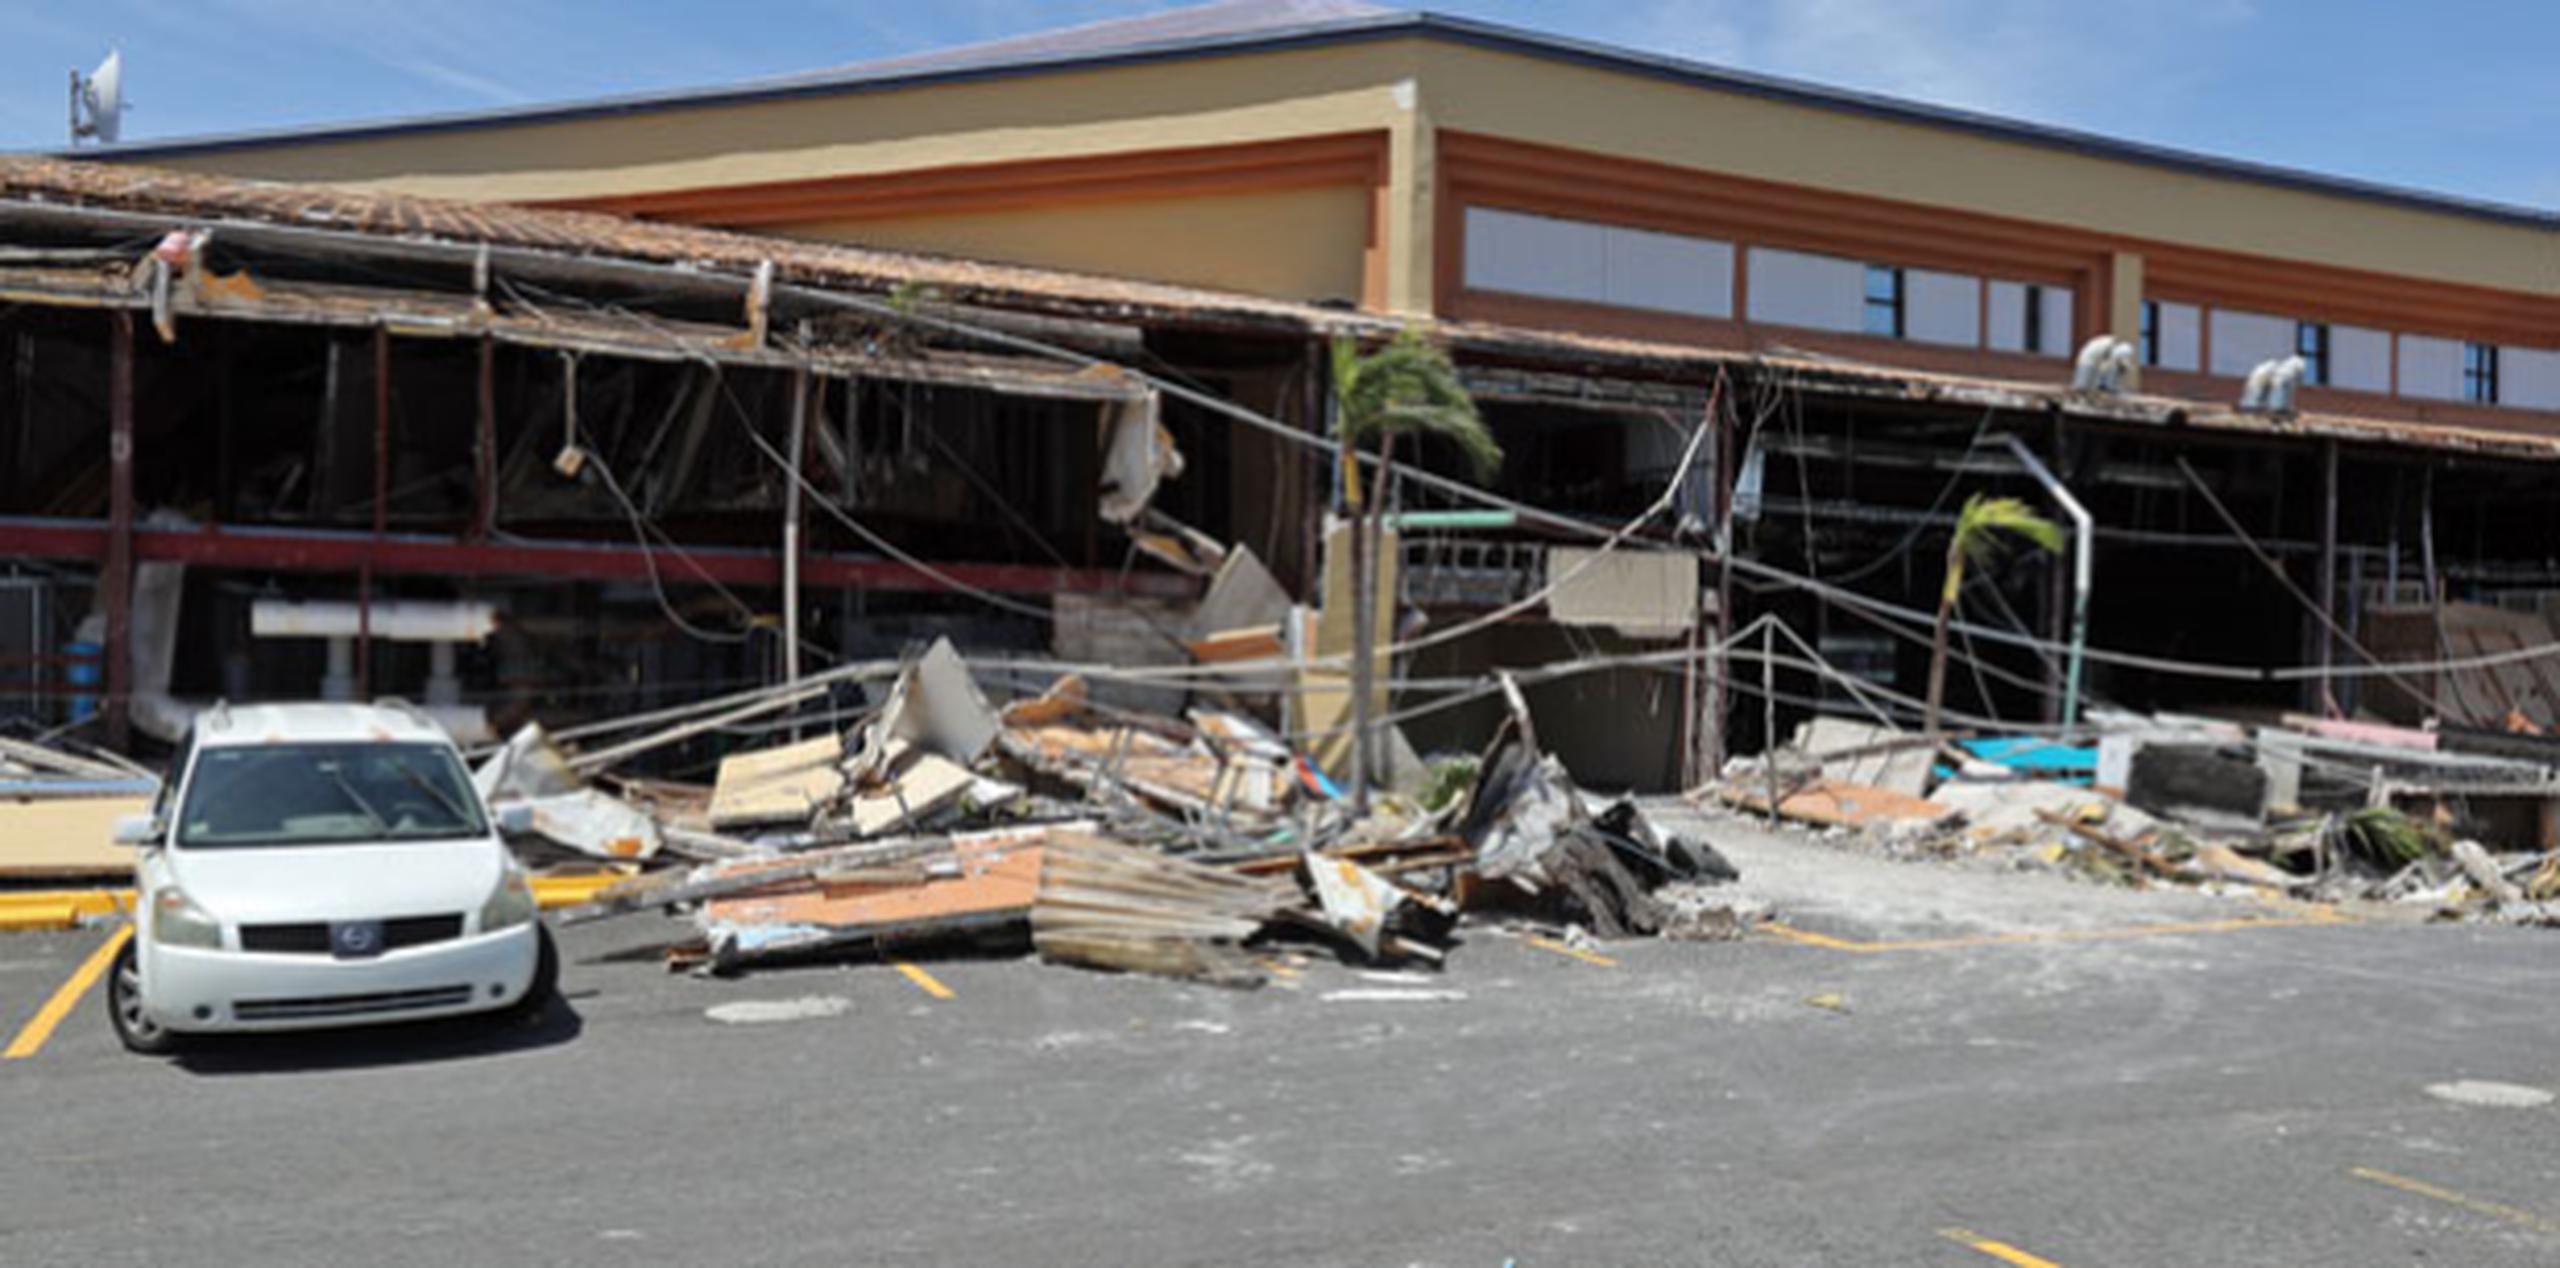 La iglesia sufrió daños estructurales tras el azote del huracán María en septiembre pasado. (juan.martinez@gfrmedia.com)